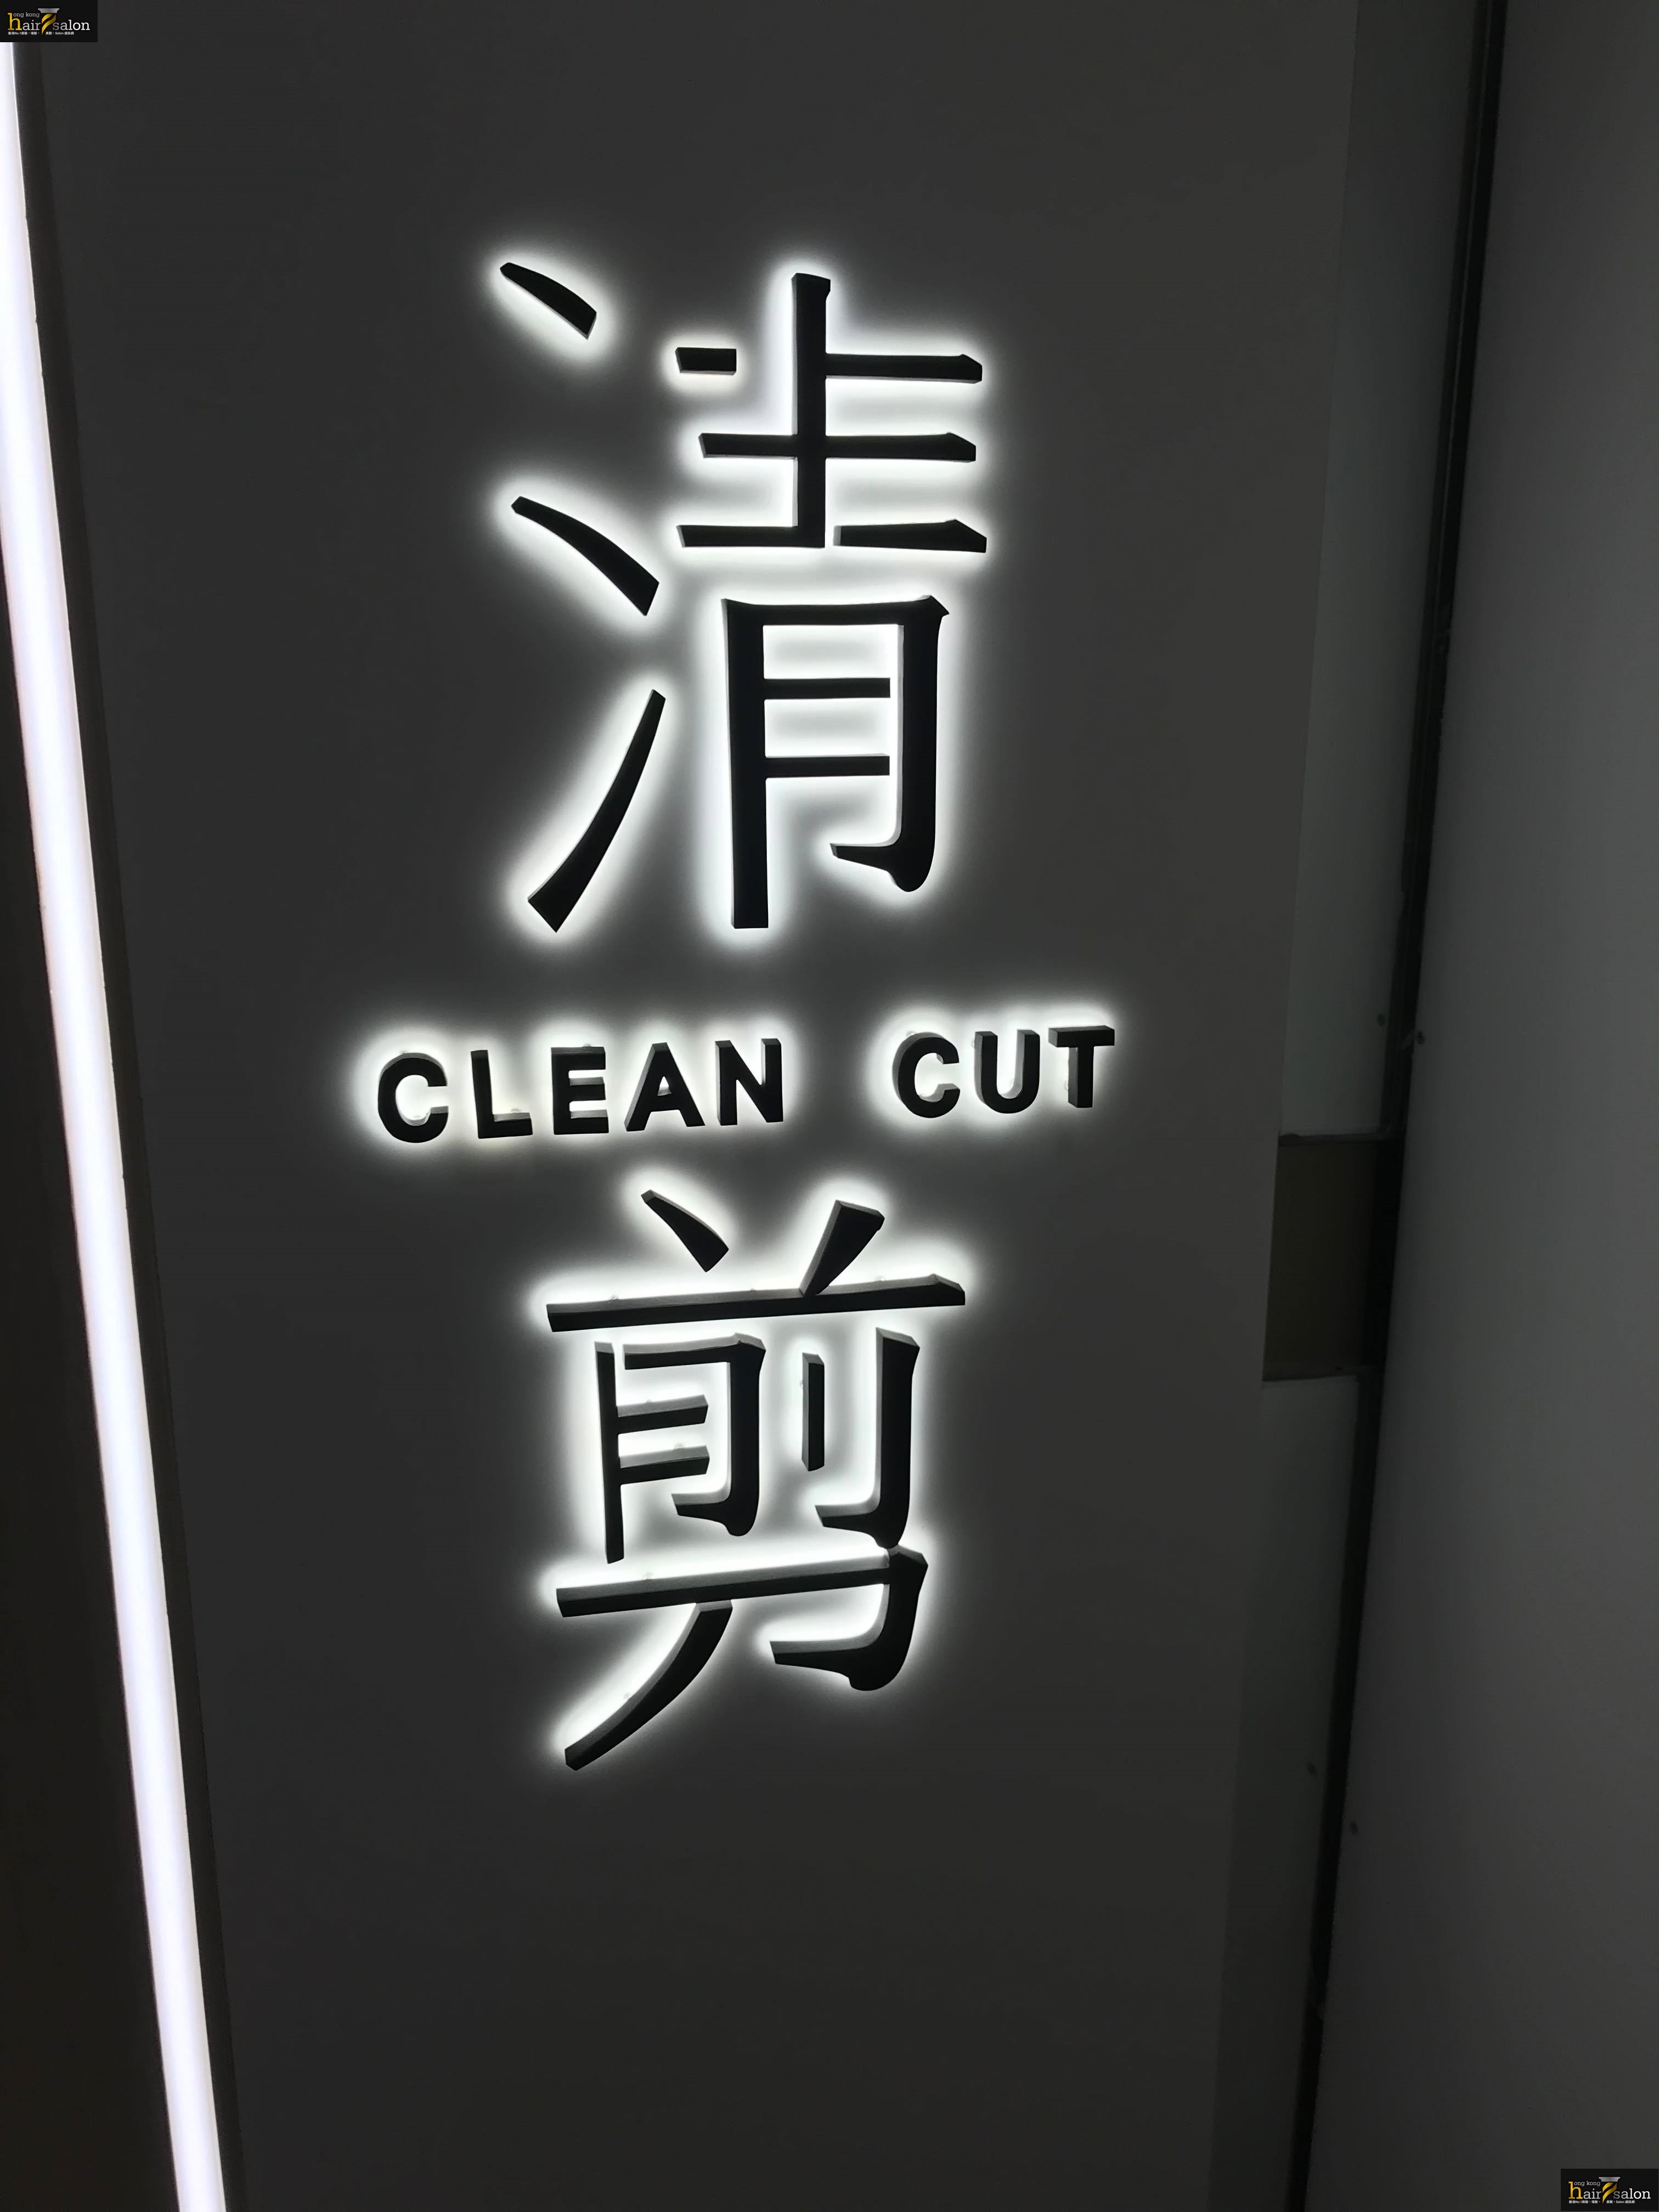 髮型屋 Salon: 清剪 CLEAN CUT (樂富廣場)